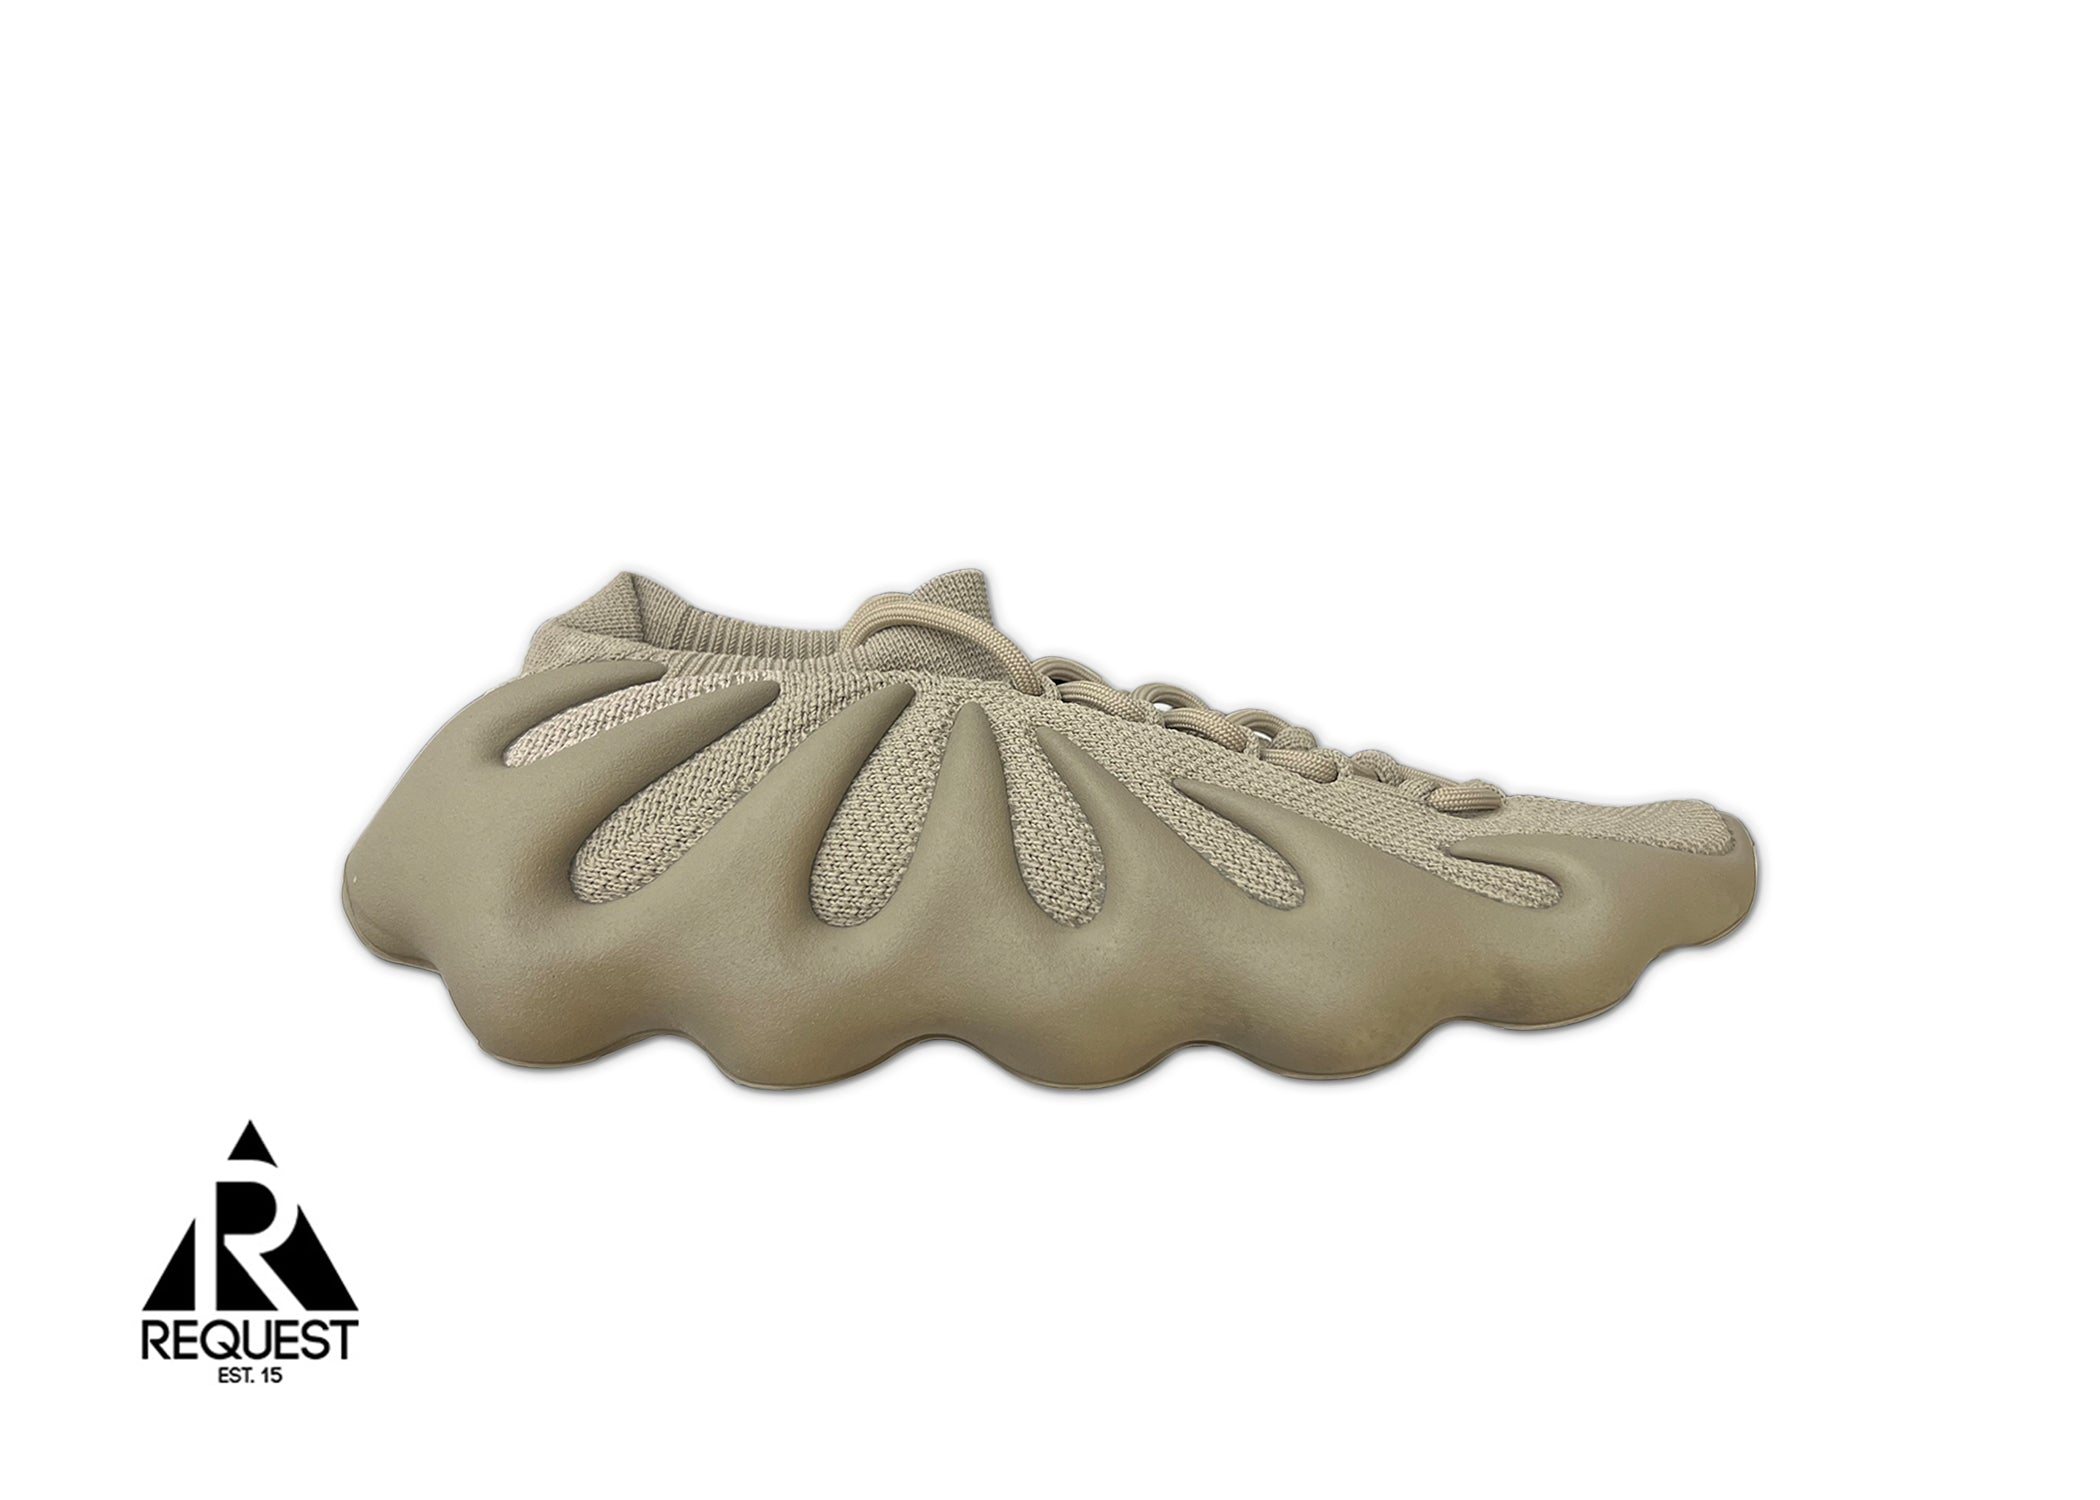 Adidas Yeezy 450 "Stone Flax"